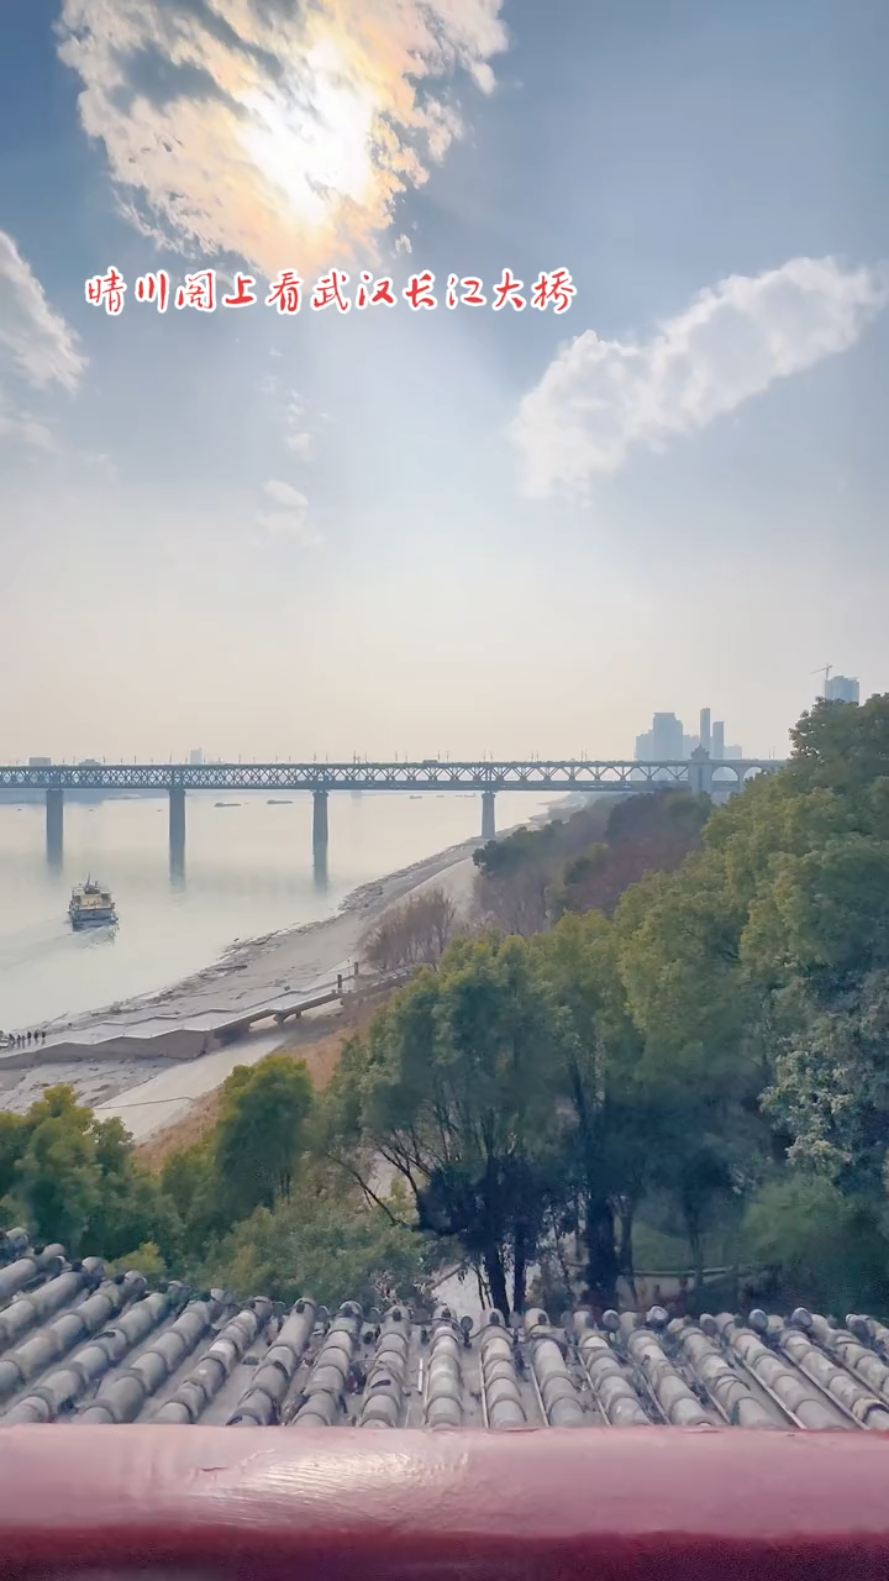 晴川阁上看武汉长江大桥。